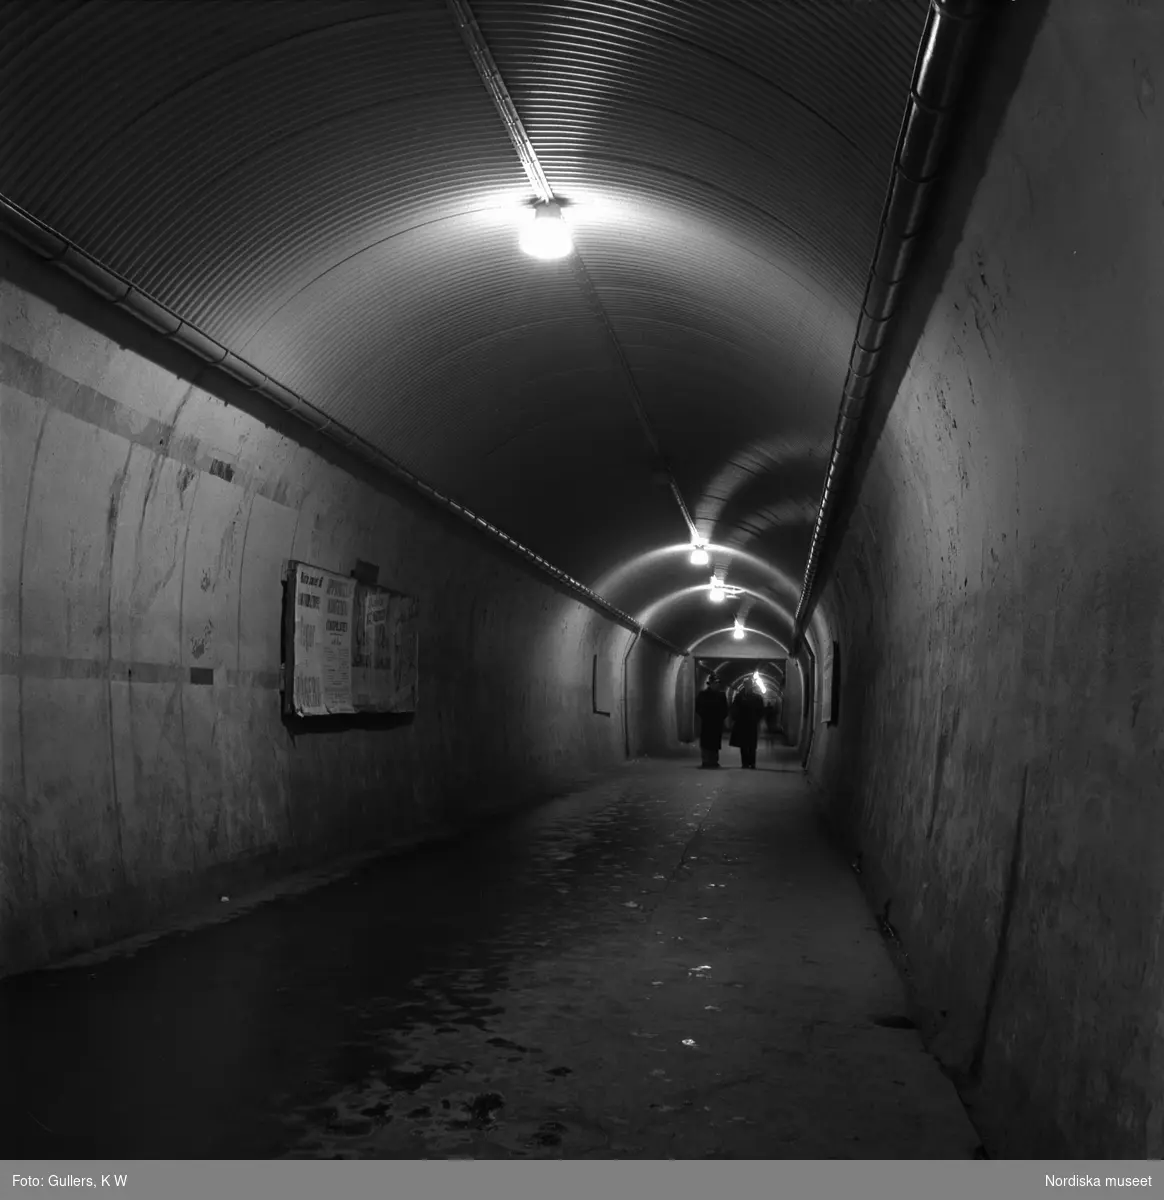 Stockholm. "Brunkebergstunnelns långa, grå schakt ekar av stegen från de sista nattvandrarna."